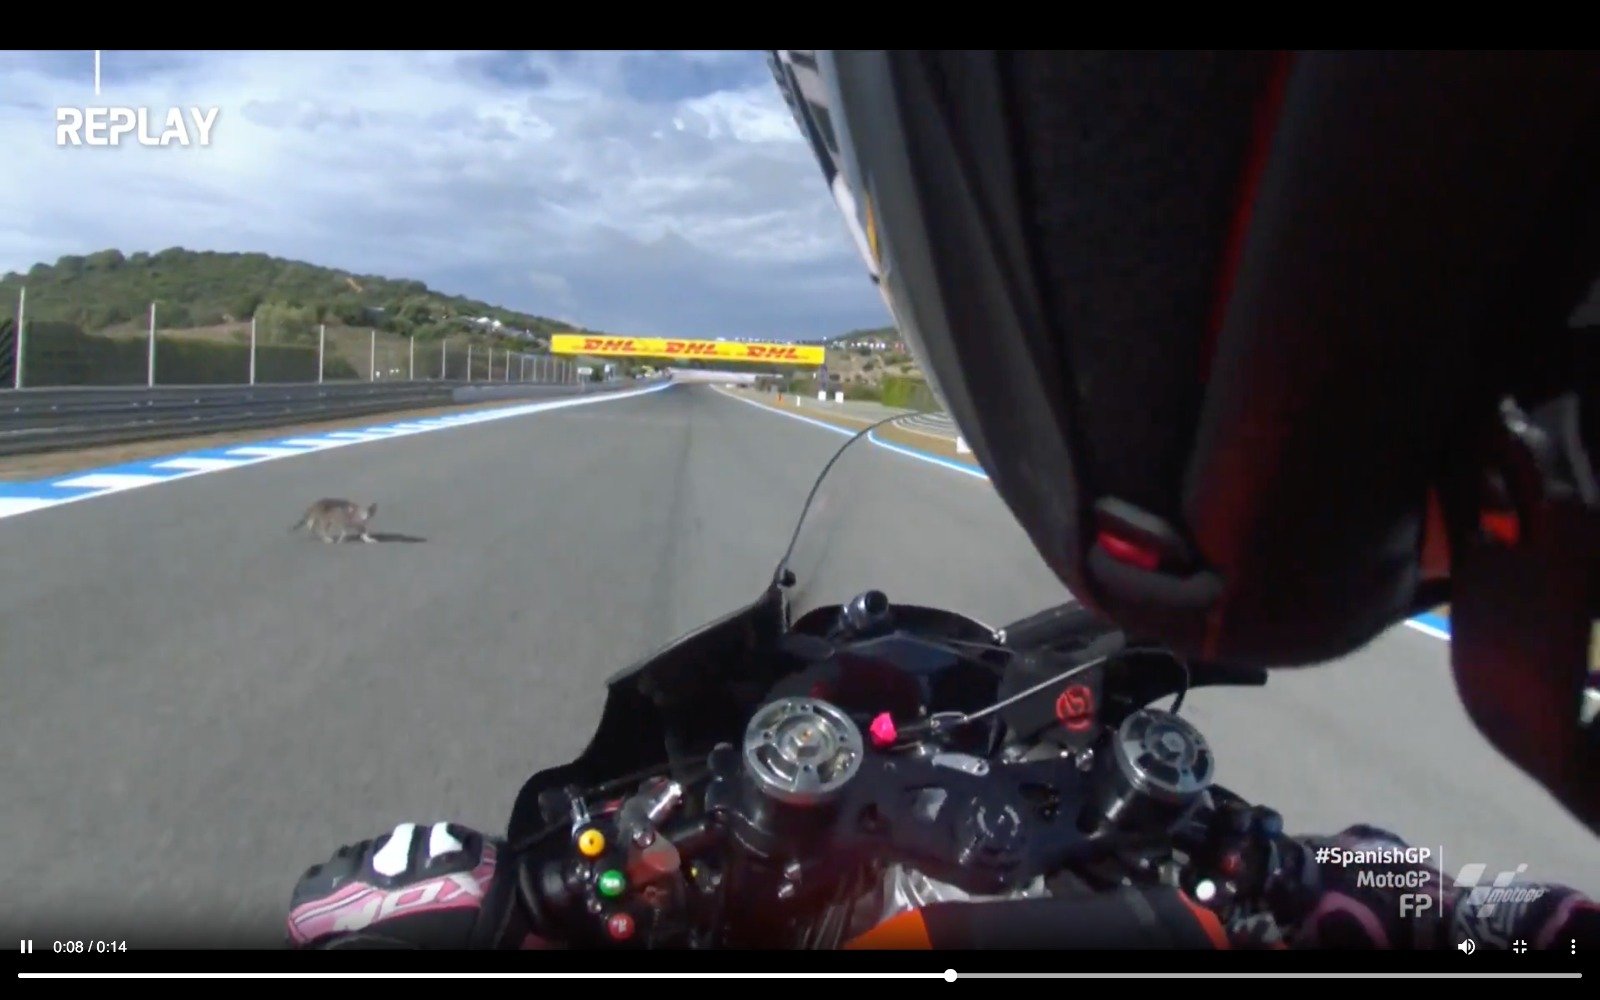 MotoGP, A (not black) cat cuts across the track, Aleix Espargarò falls at next lap GPone